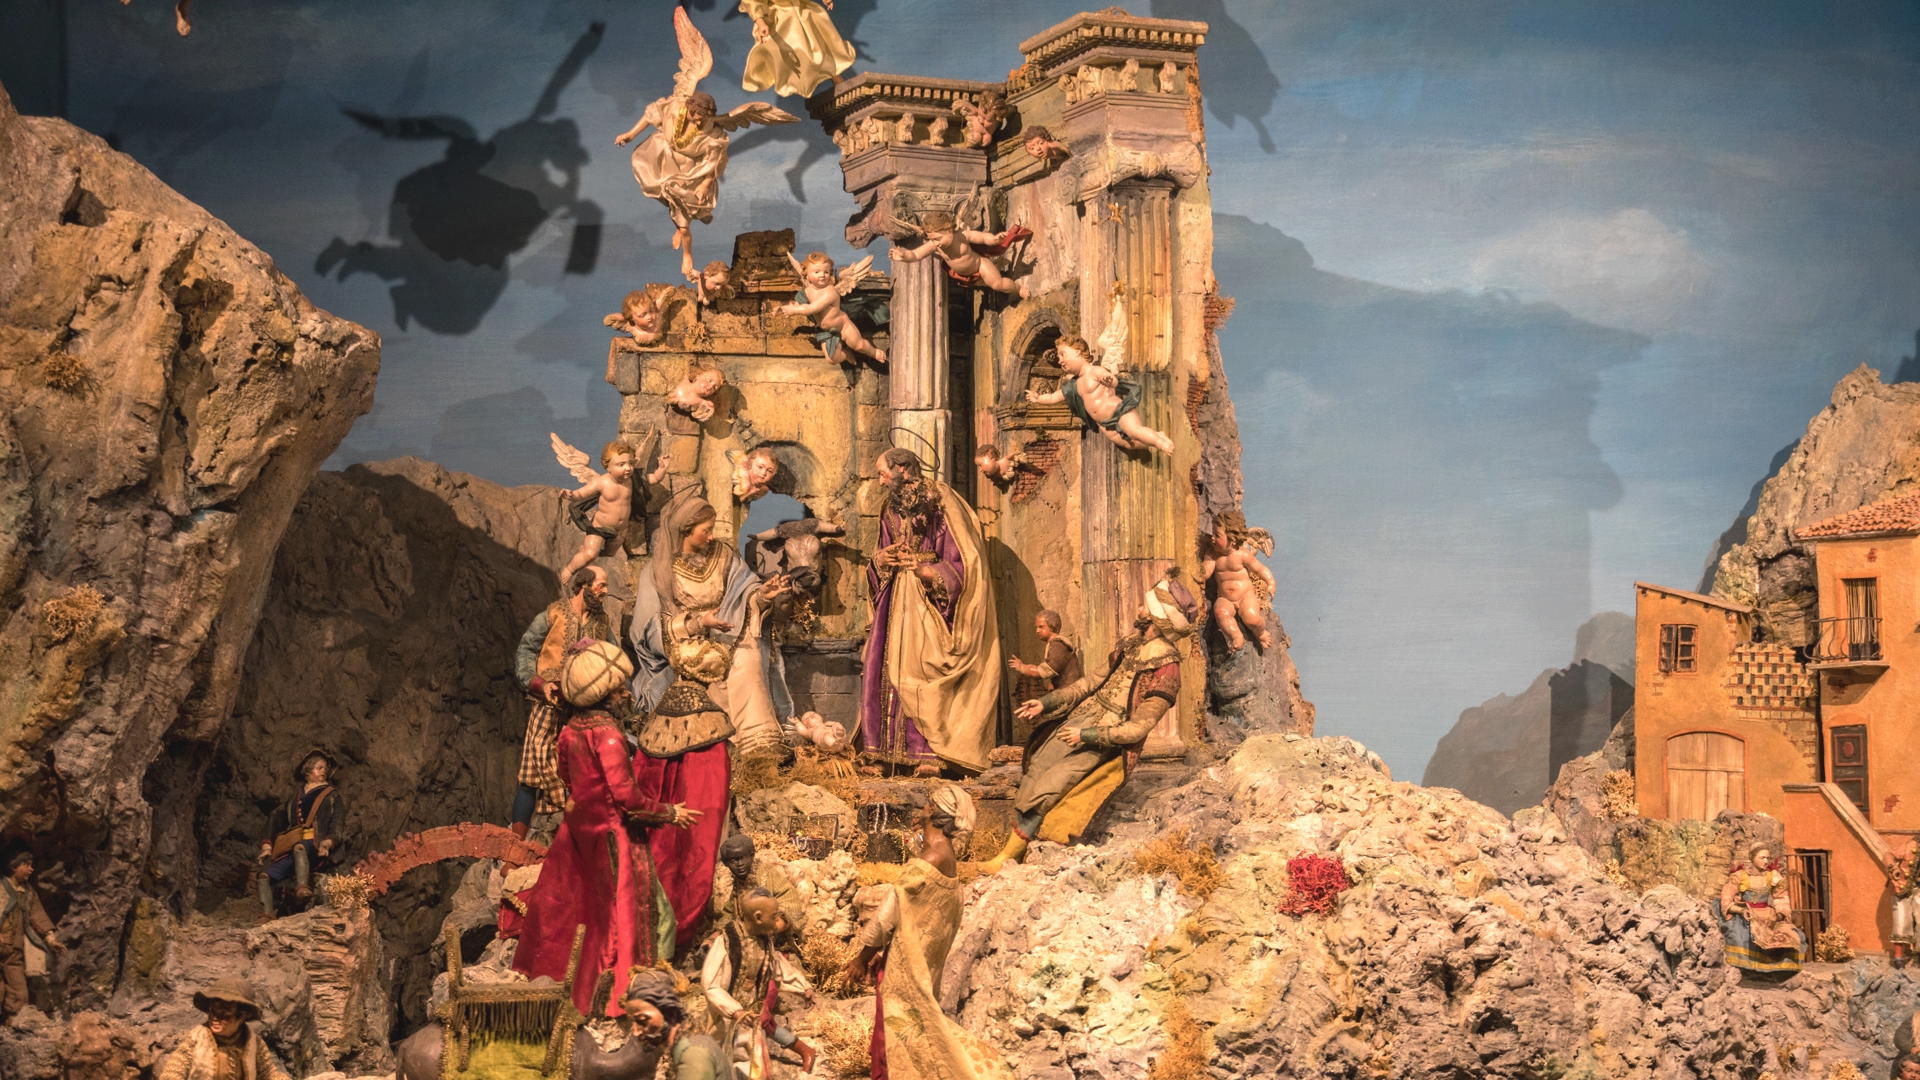 Les rois mages apportent leurs présents à l'Enfant-Jésus,  crèche napolitaine de la basilique Notre-Dame de Fribourg | © Maurice Page